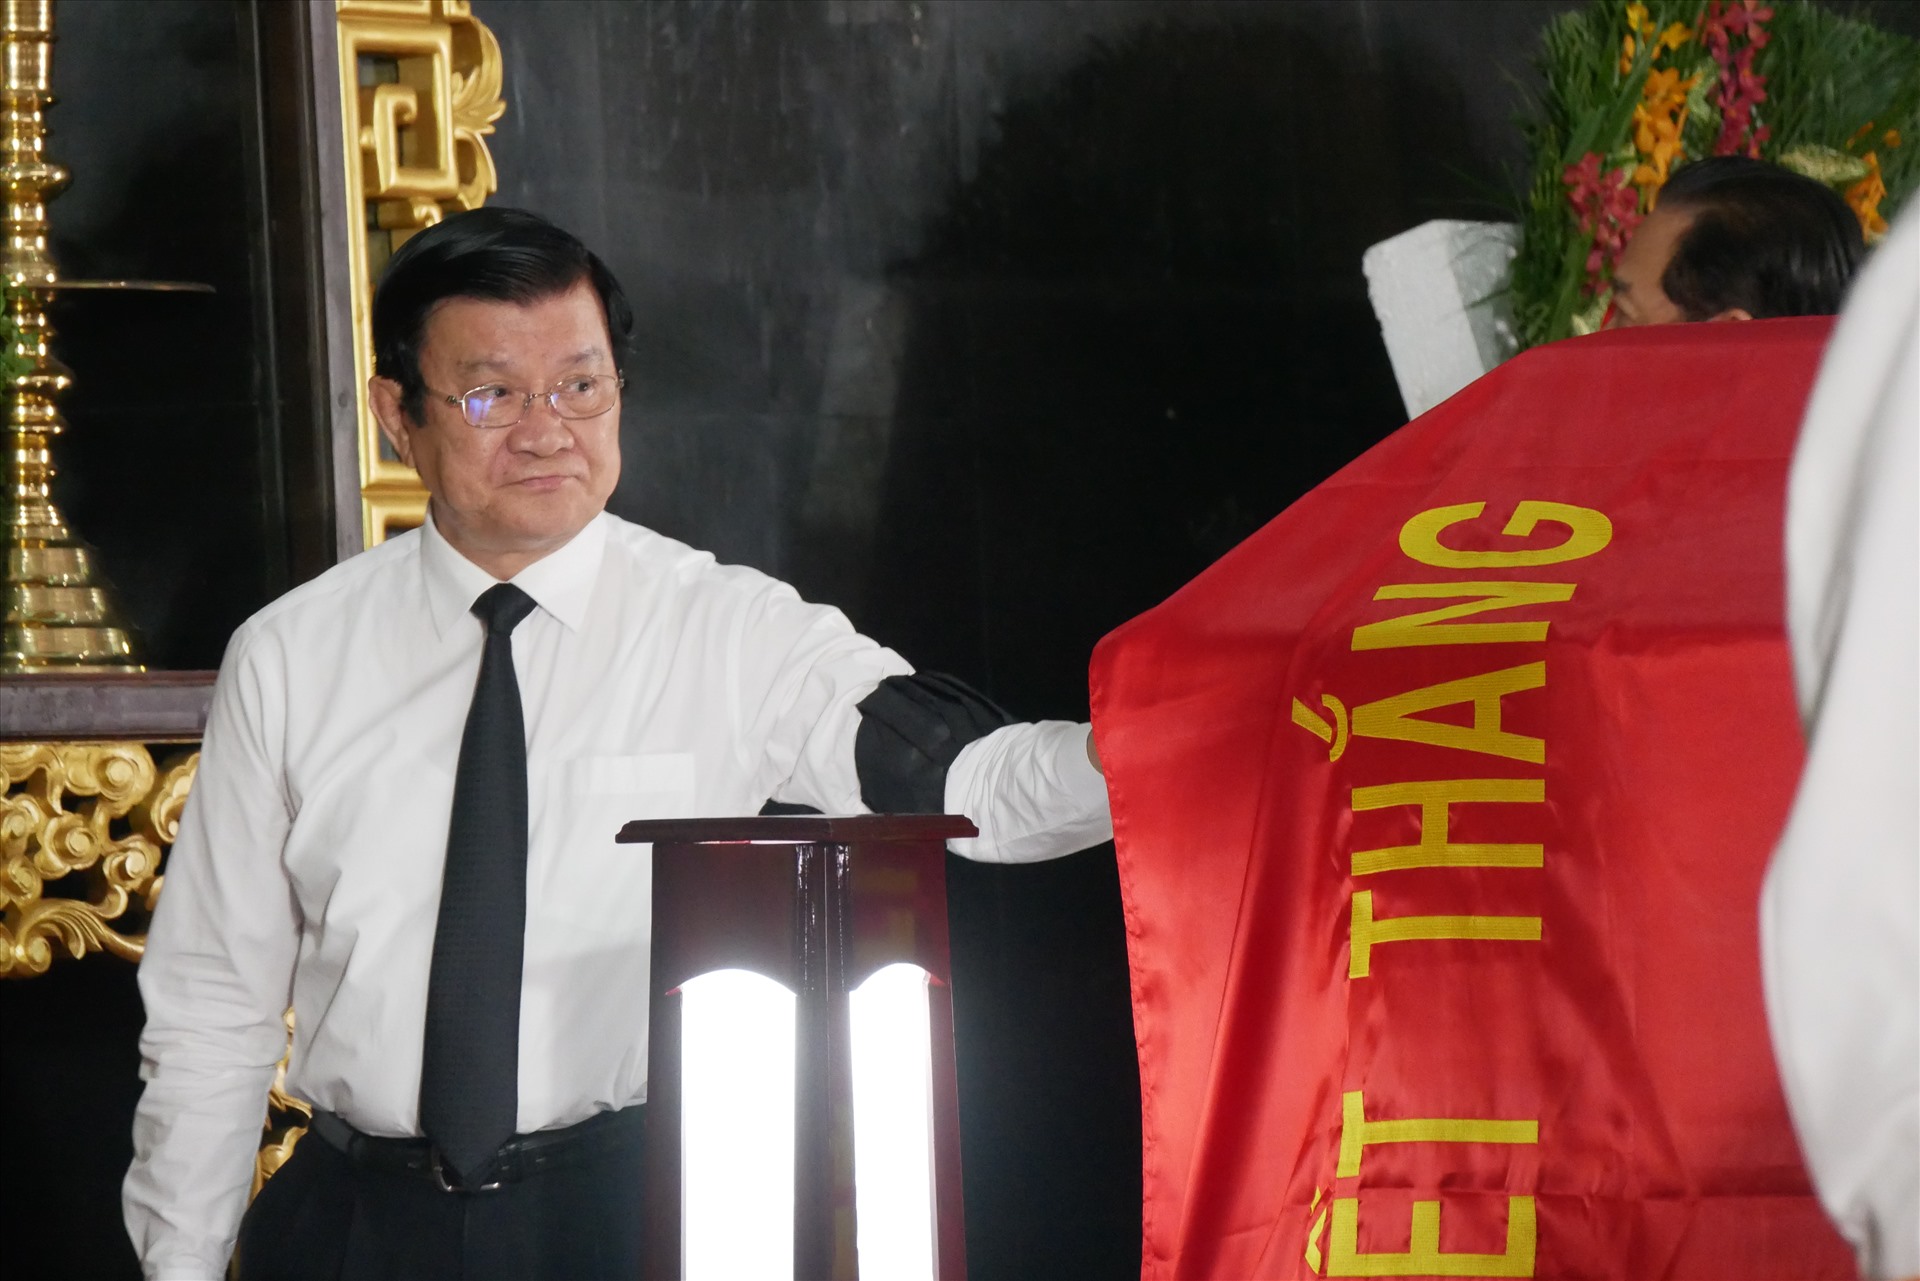 Nguyên cựu Chủ tịch Trương Tấn Sang đi vòng quanh linh cữu tiễn đưa ông Trần Quốc Hương về nơi an nghỉ cuối cùng.